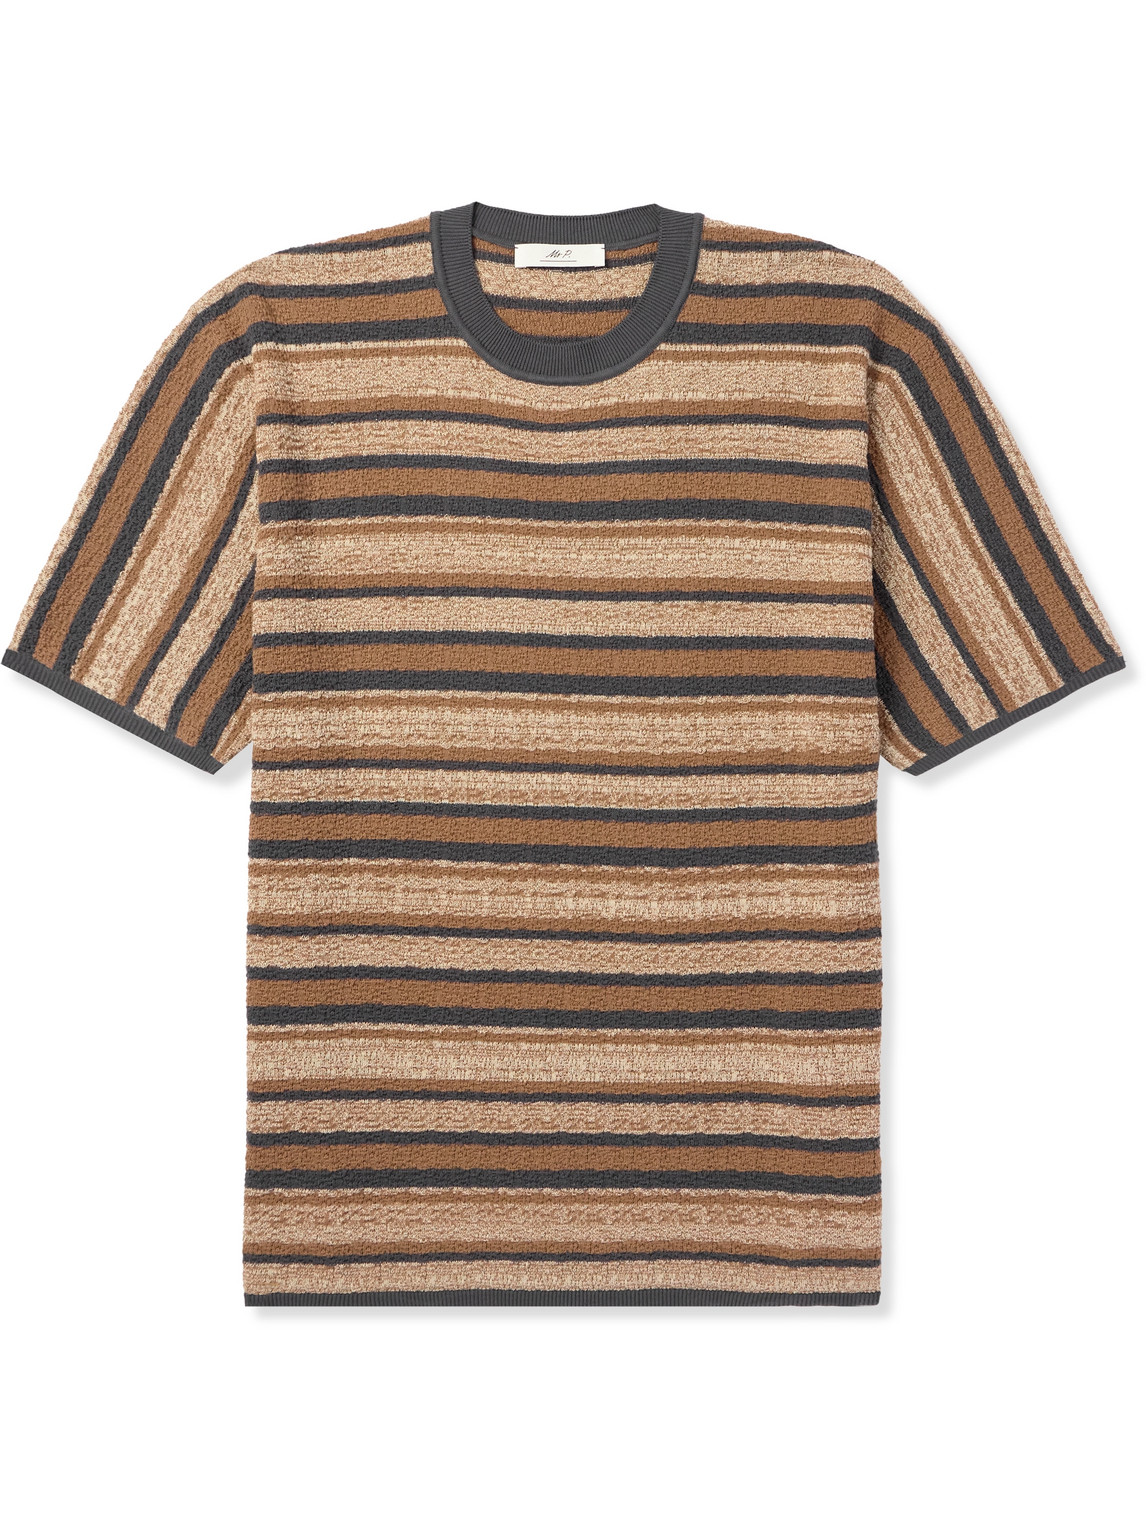 Mr P. - Striped Textured-Cotton T-Shirt - Men - Brown - L von Mr P.